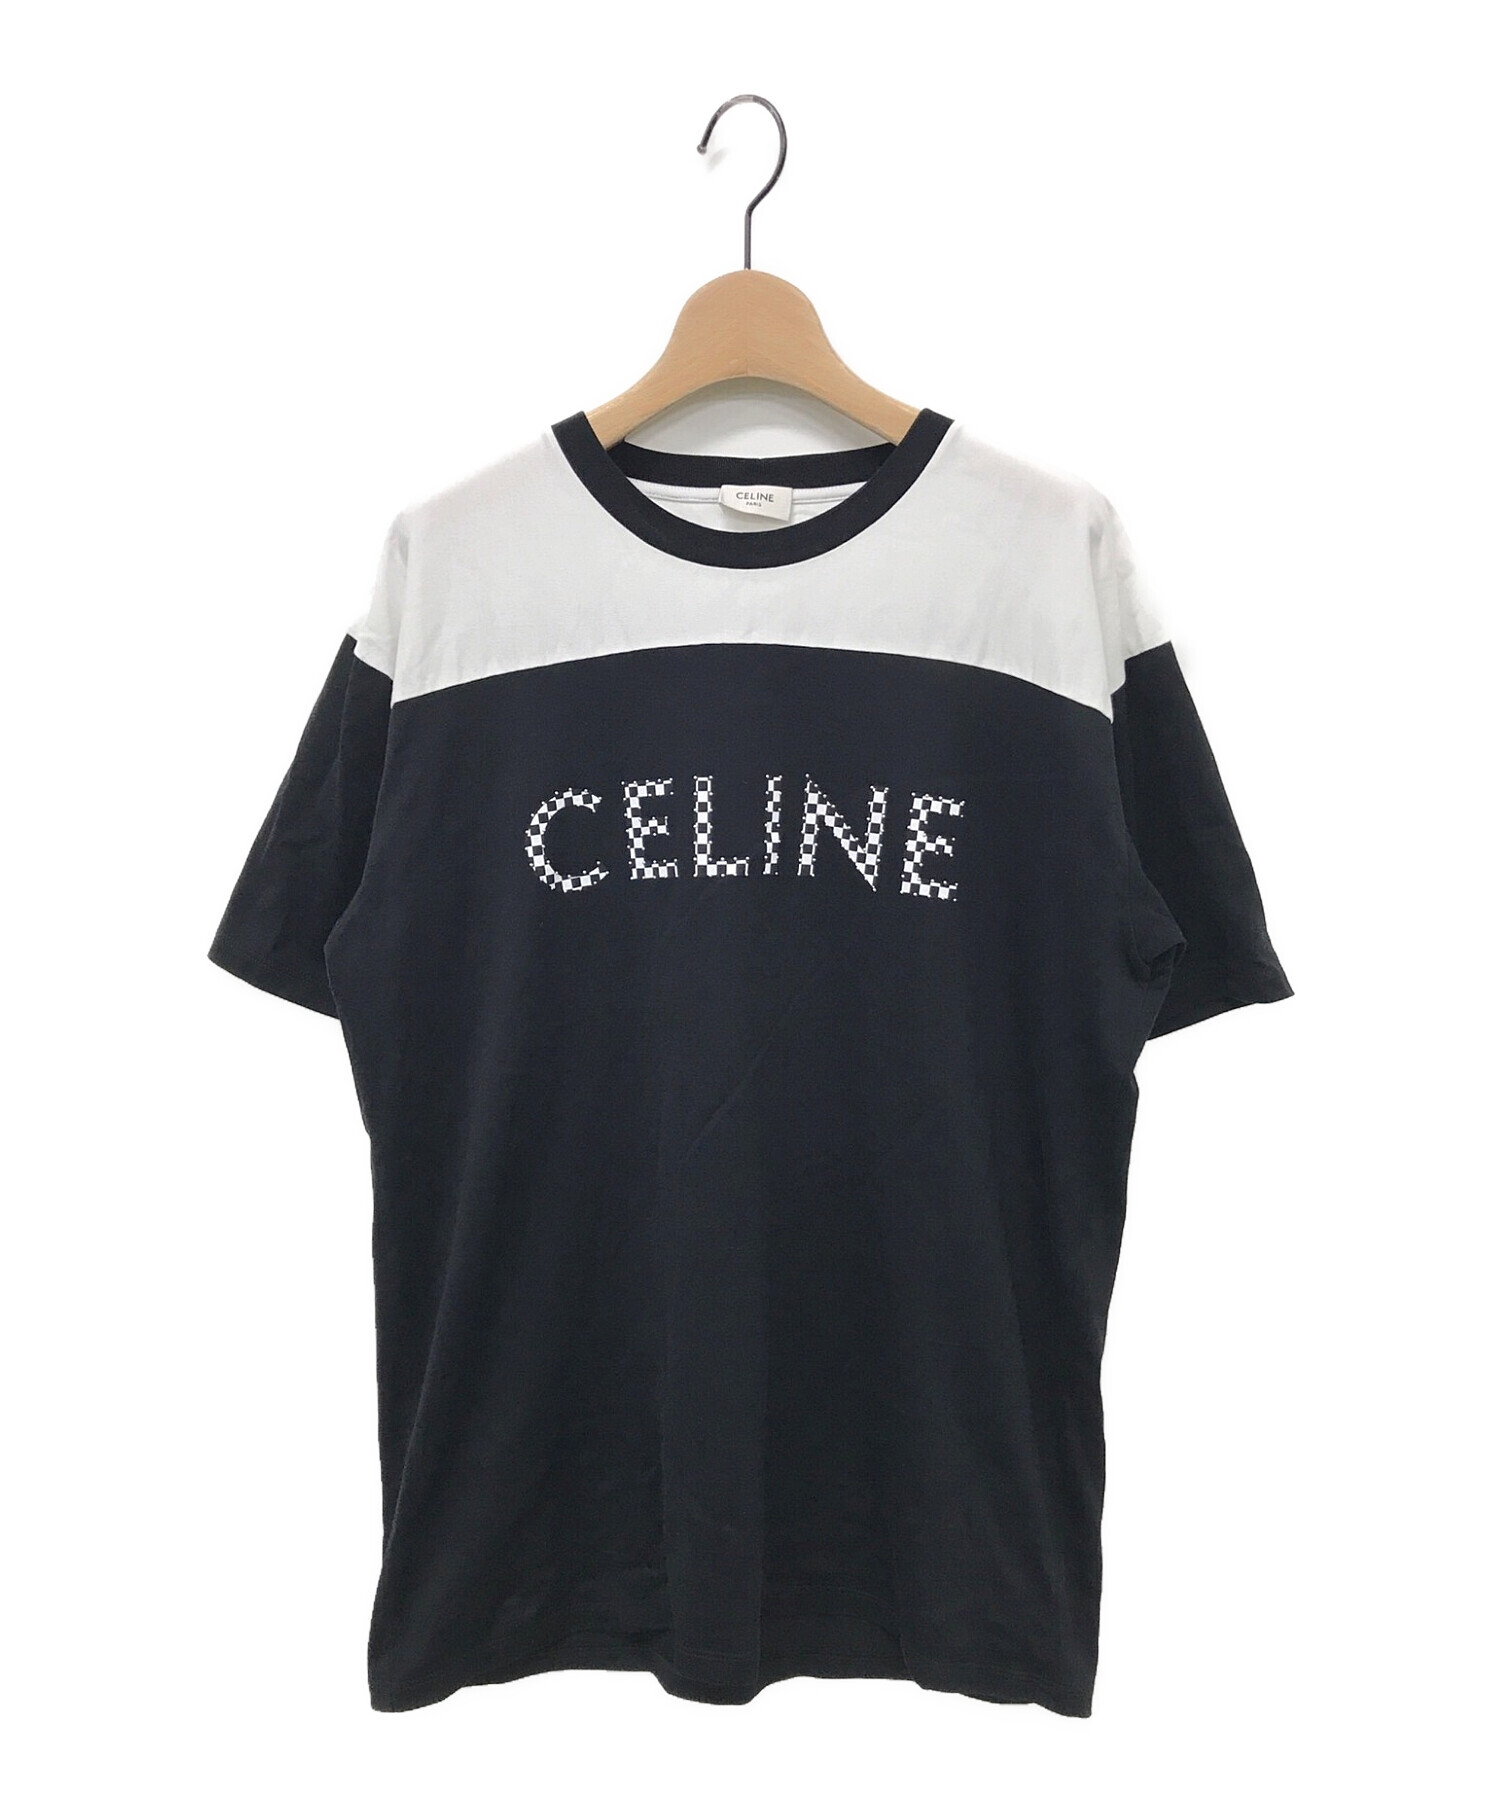 セリーヌCELINE スタッズTシャツ　ブラック3万円で即決したいのですが